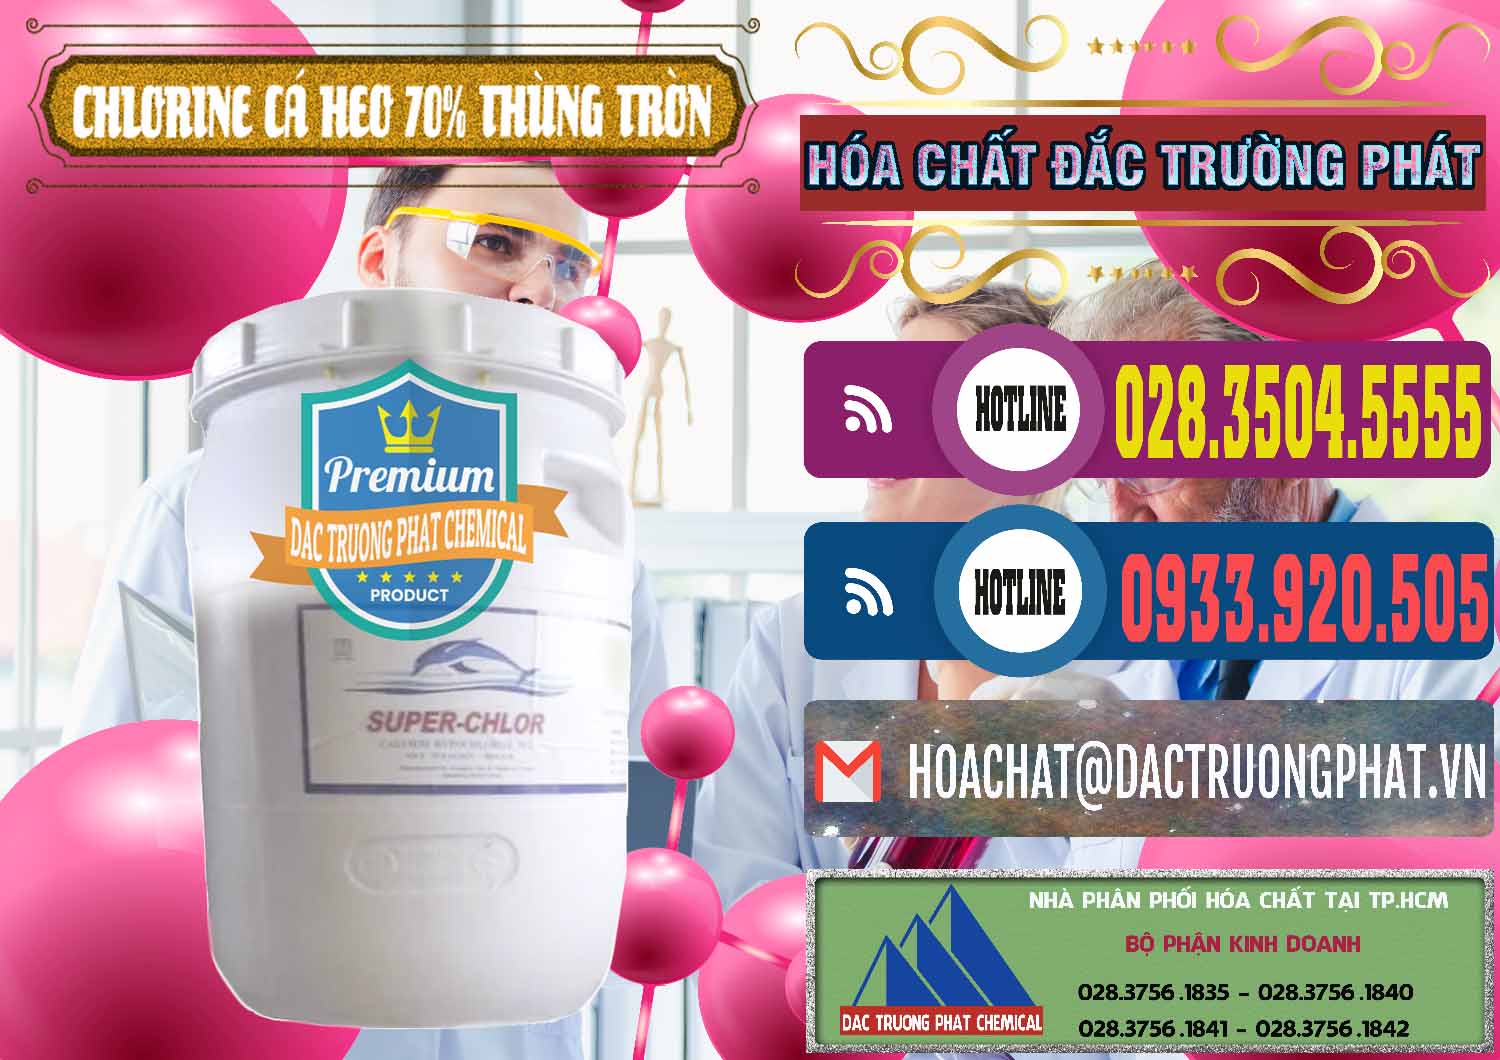 Cty nhập khẩu & bán Clorin - Chlorine Cá Heo 70% Super Chlor Thùng Tròn Nắp Trắng Trung Quốc China - 0239 - Đơn vị chuyên nhập khẩu & cung cấp hóa chất tại TP.HCM - muabanhoachat.com.vn